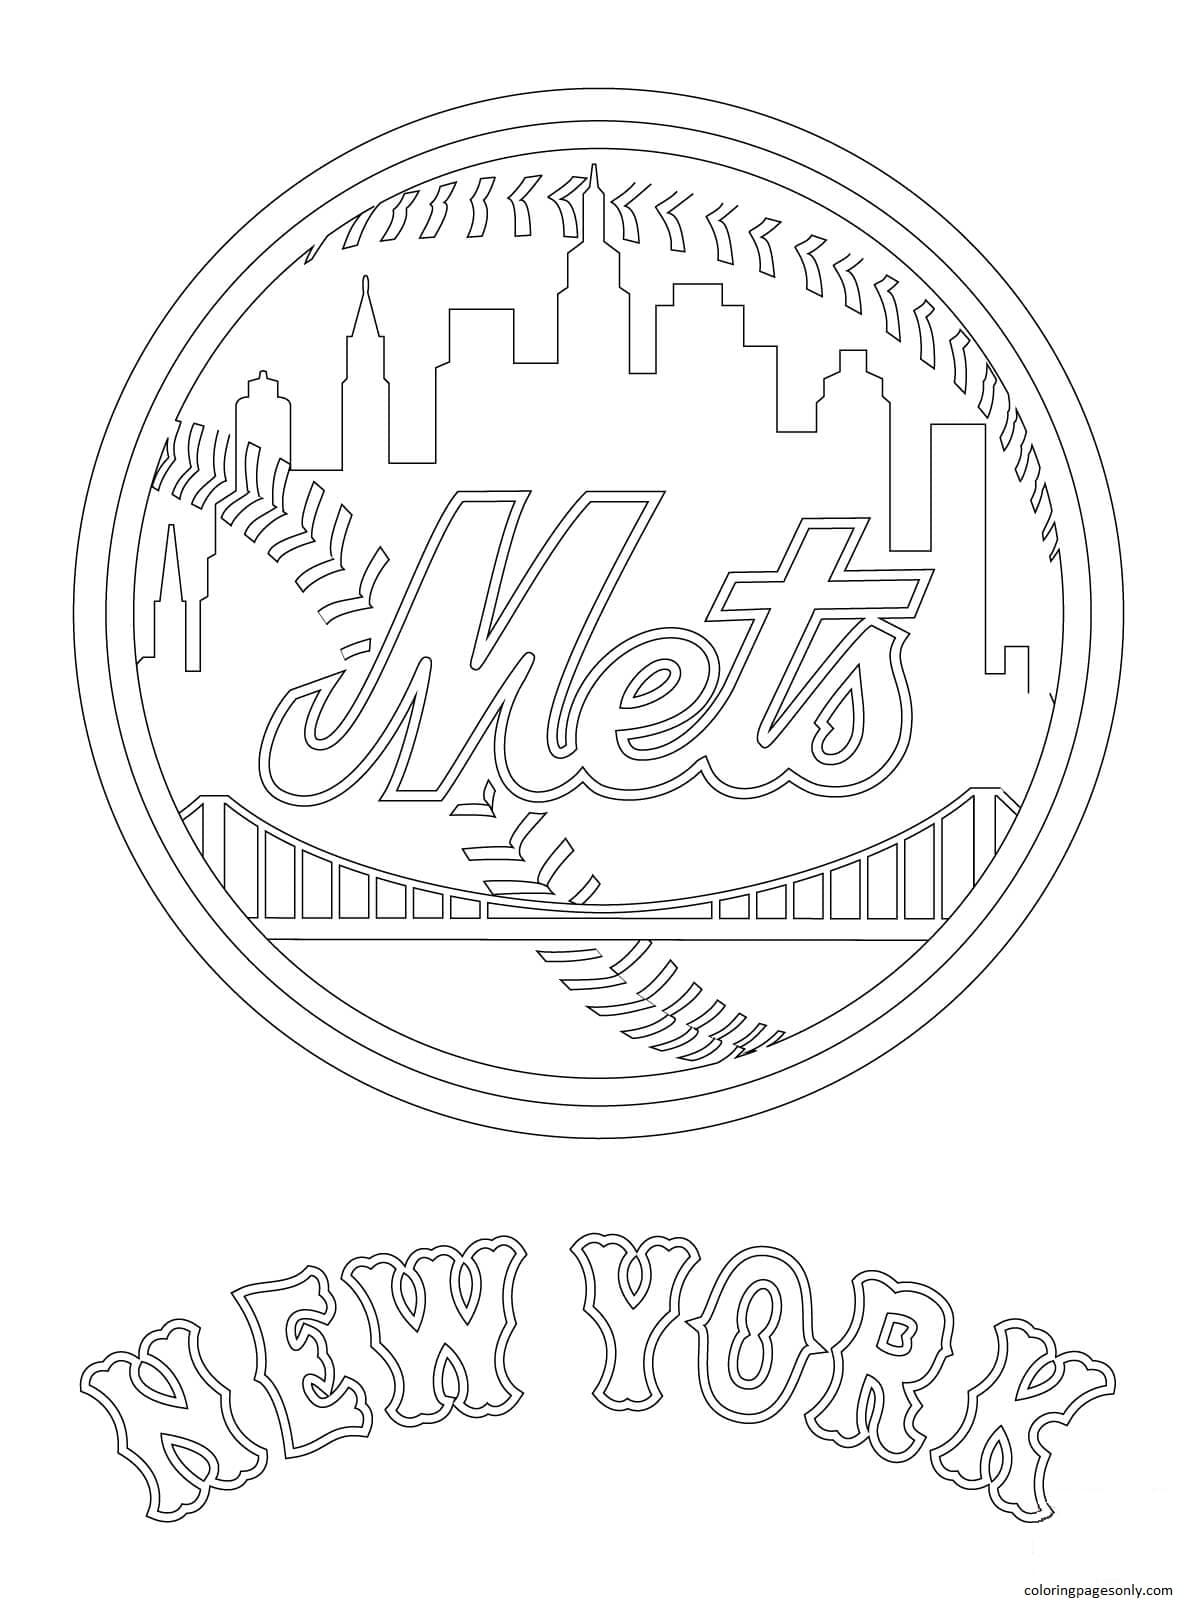 Logo De Los Mets De Nueva York Para Colorear